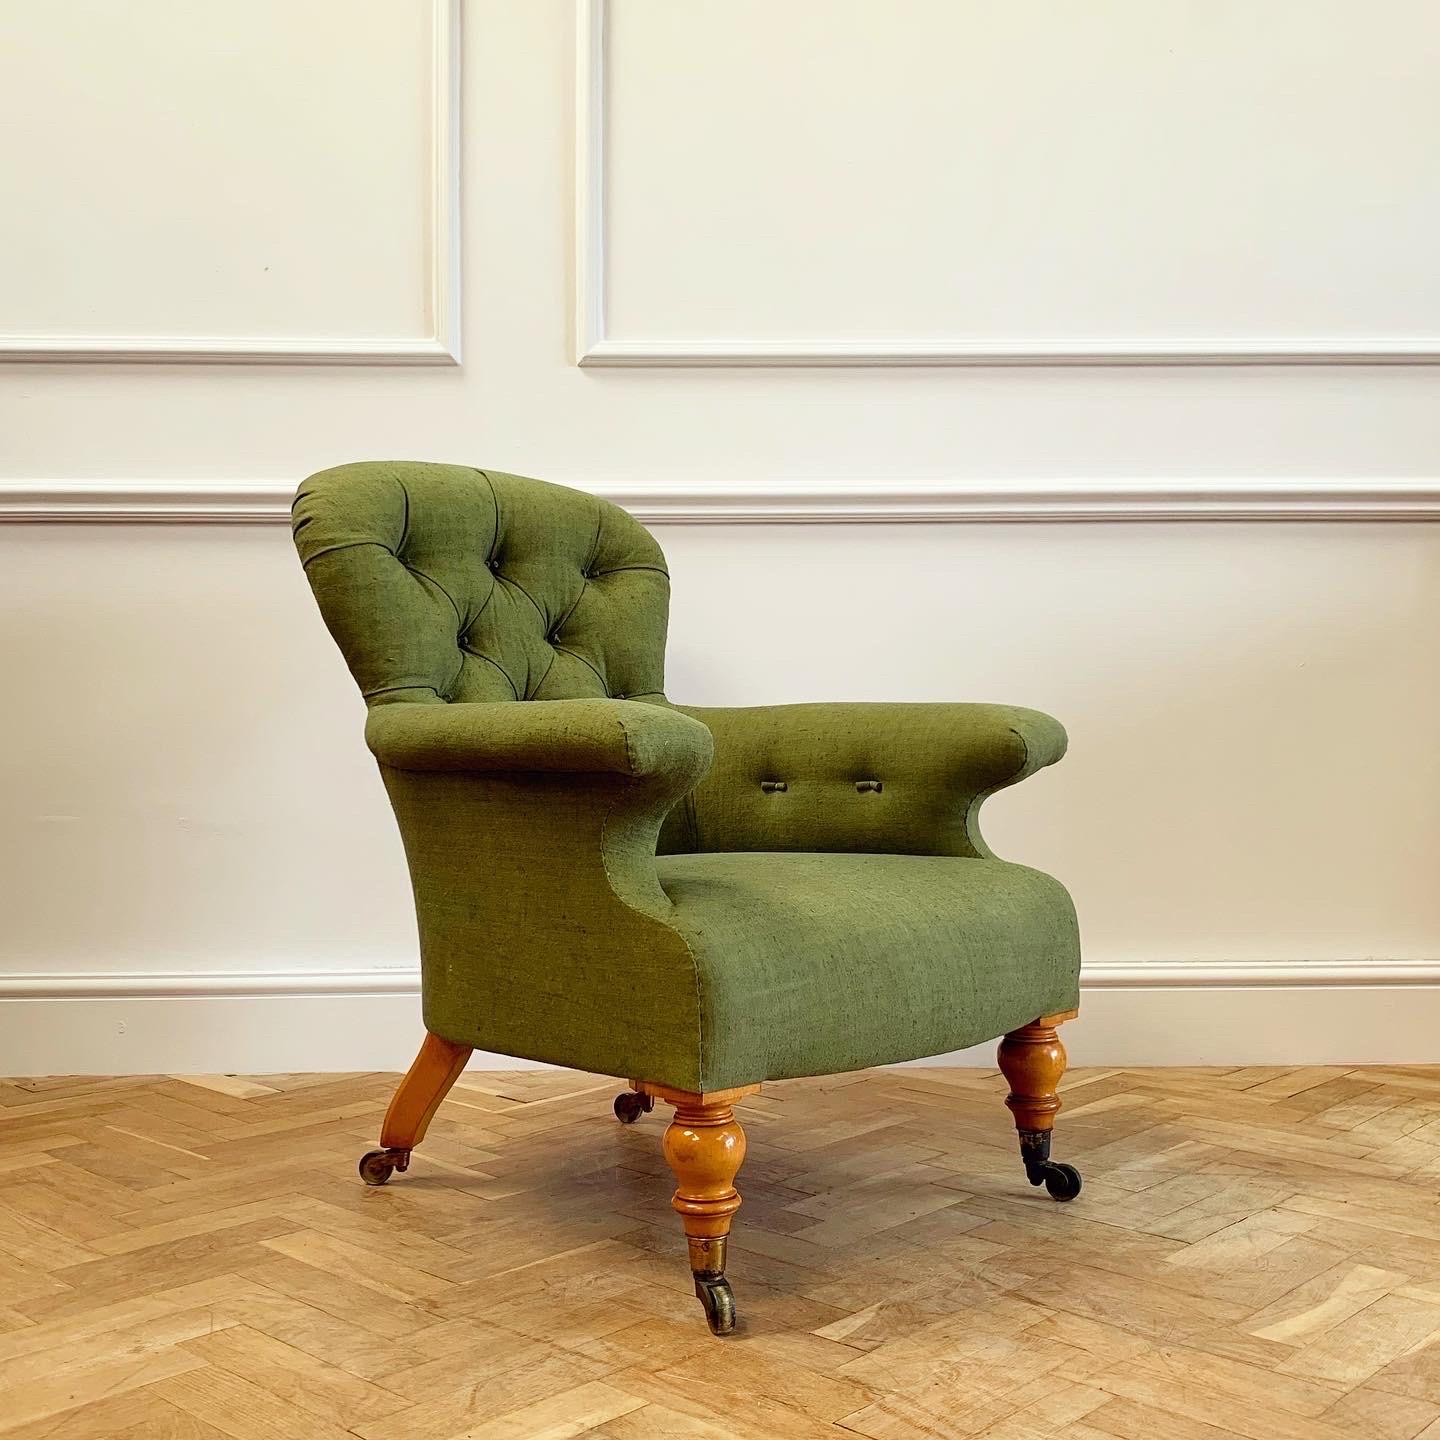 Un elegante sillón tapizado Hindley & Sons con patas de madera satinada, recién tapizado con lino antiguo teñido naturalmente en verde botella.

Inglés, principios del siglo XIX.